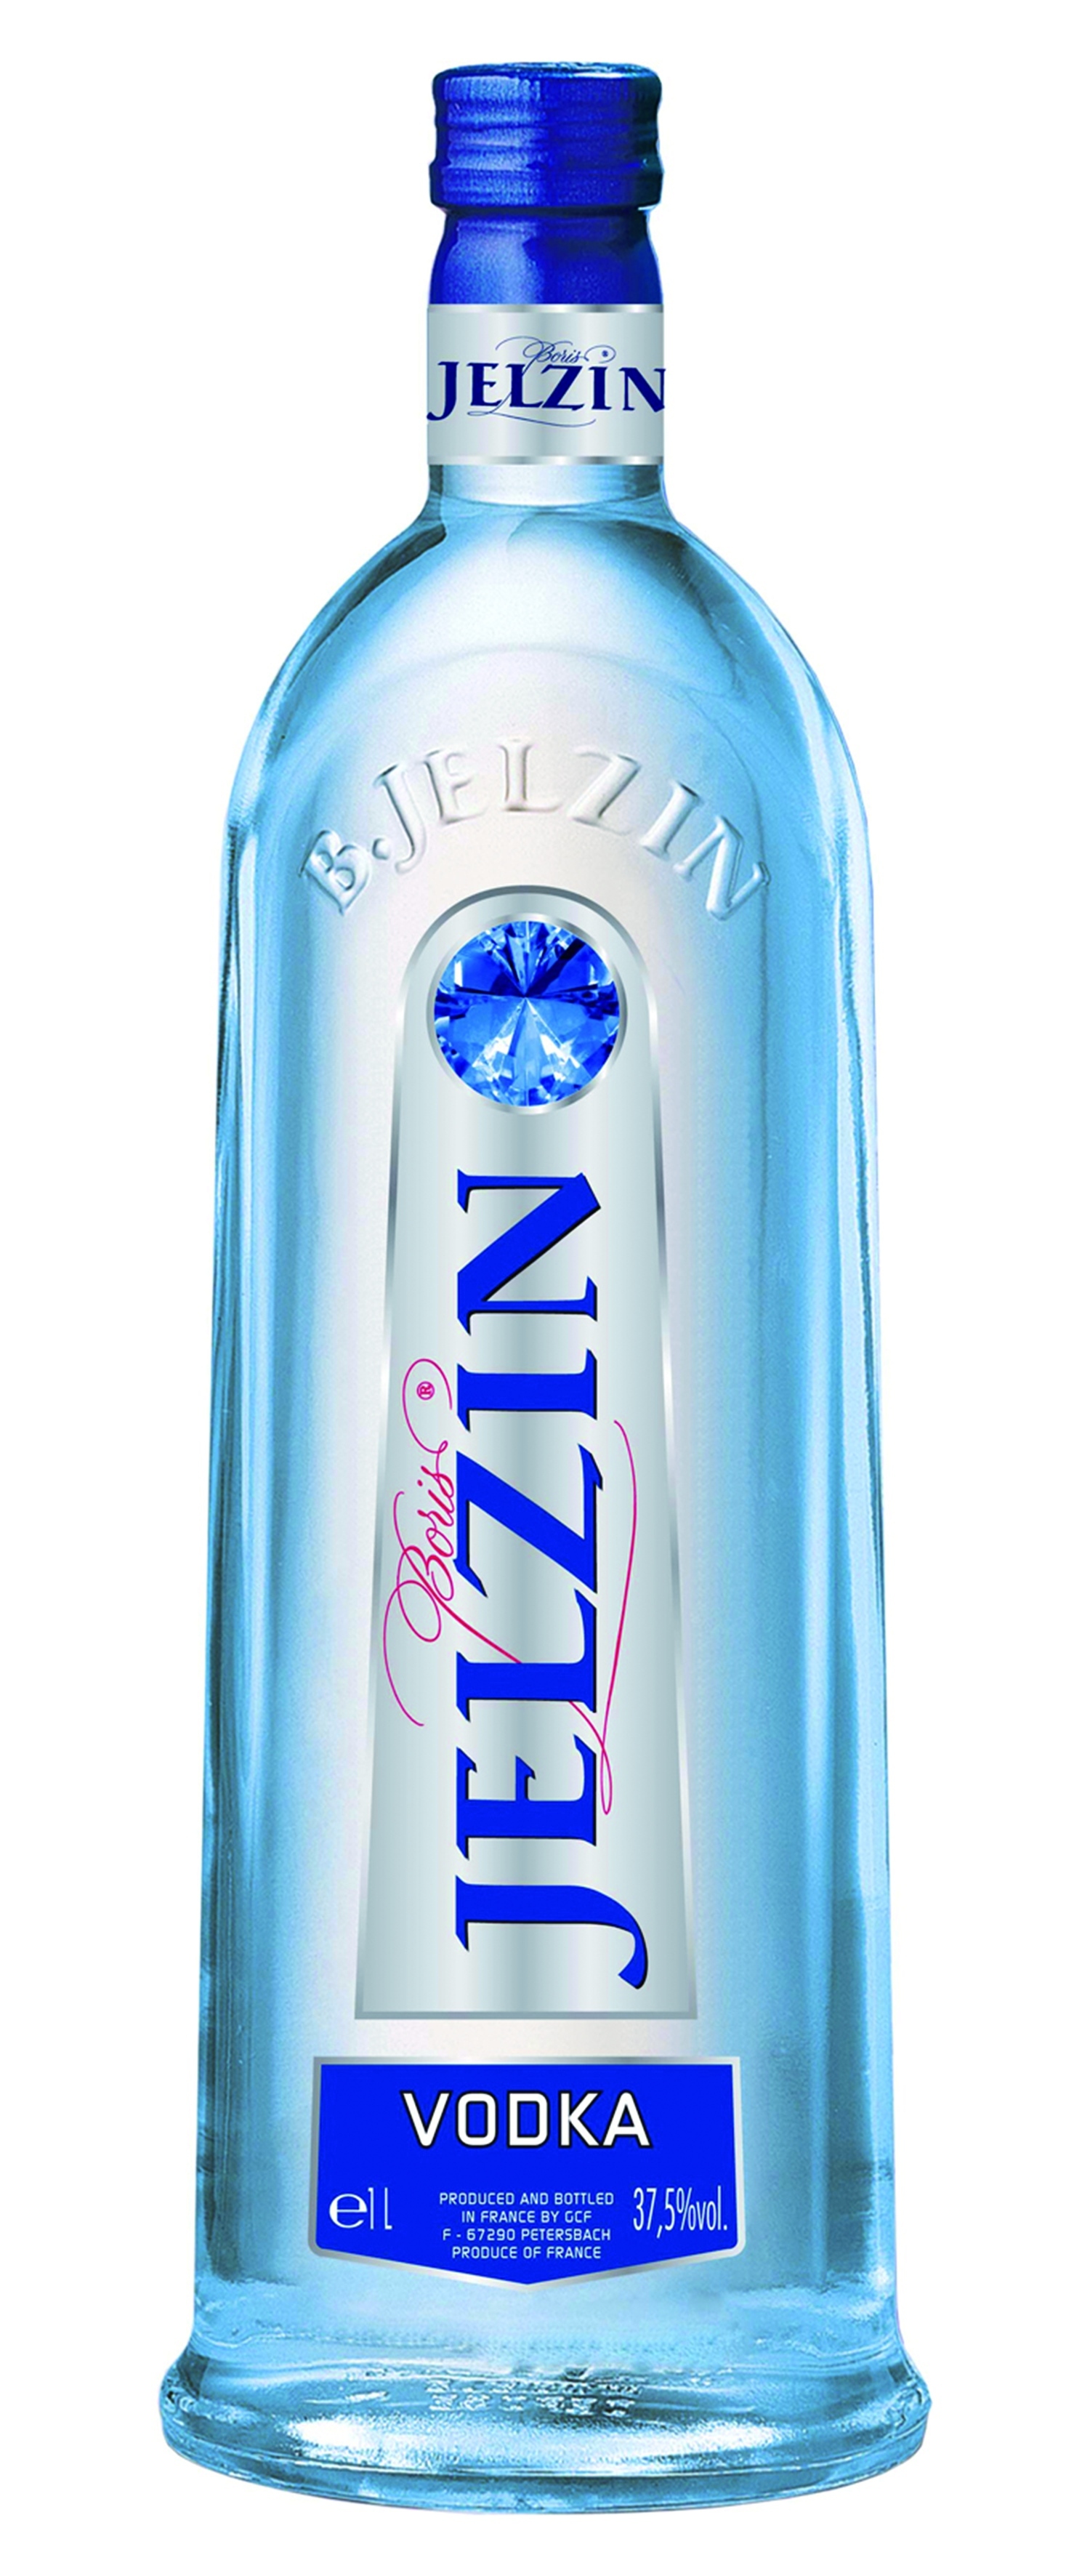 Boris Jelzin Vodka   